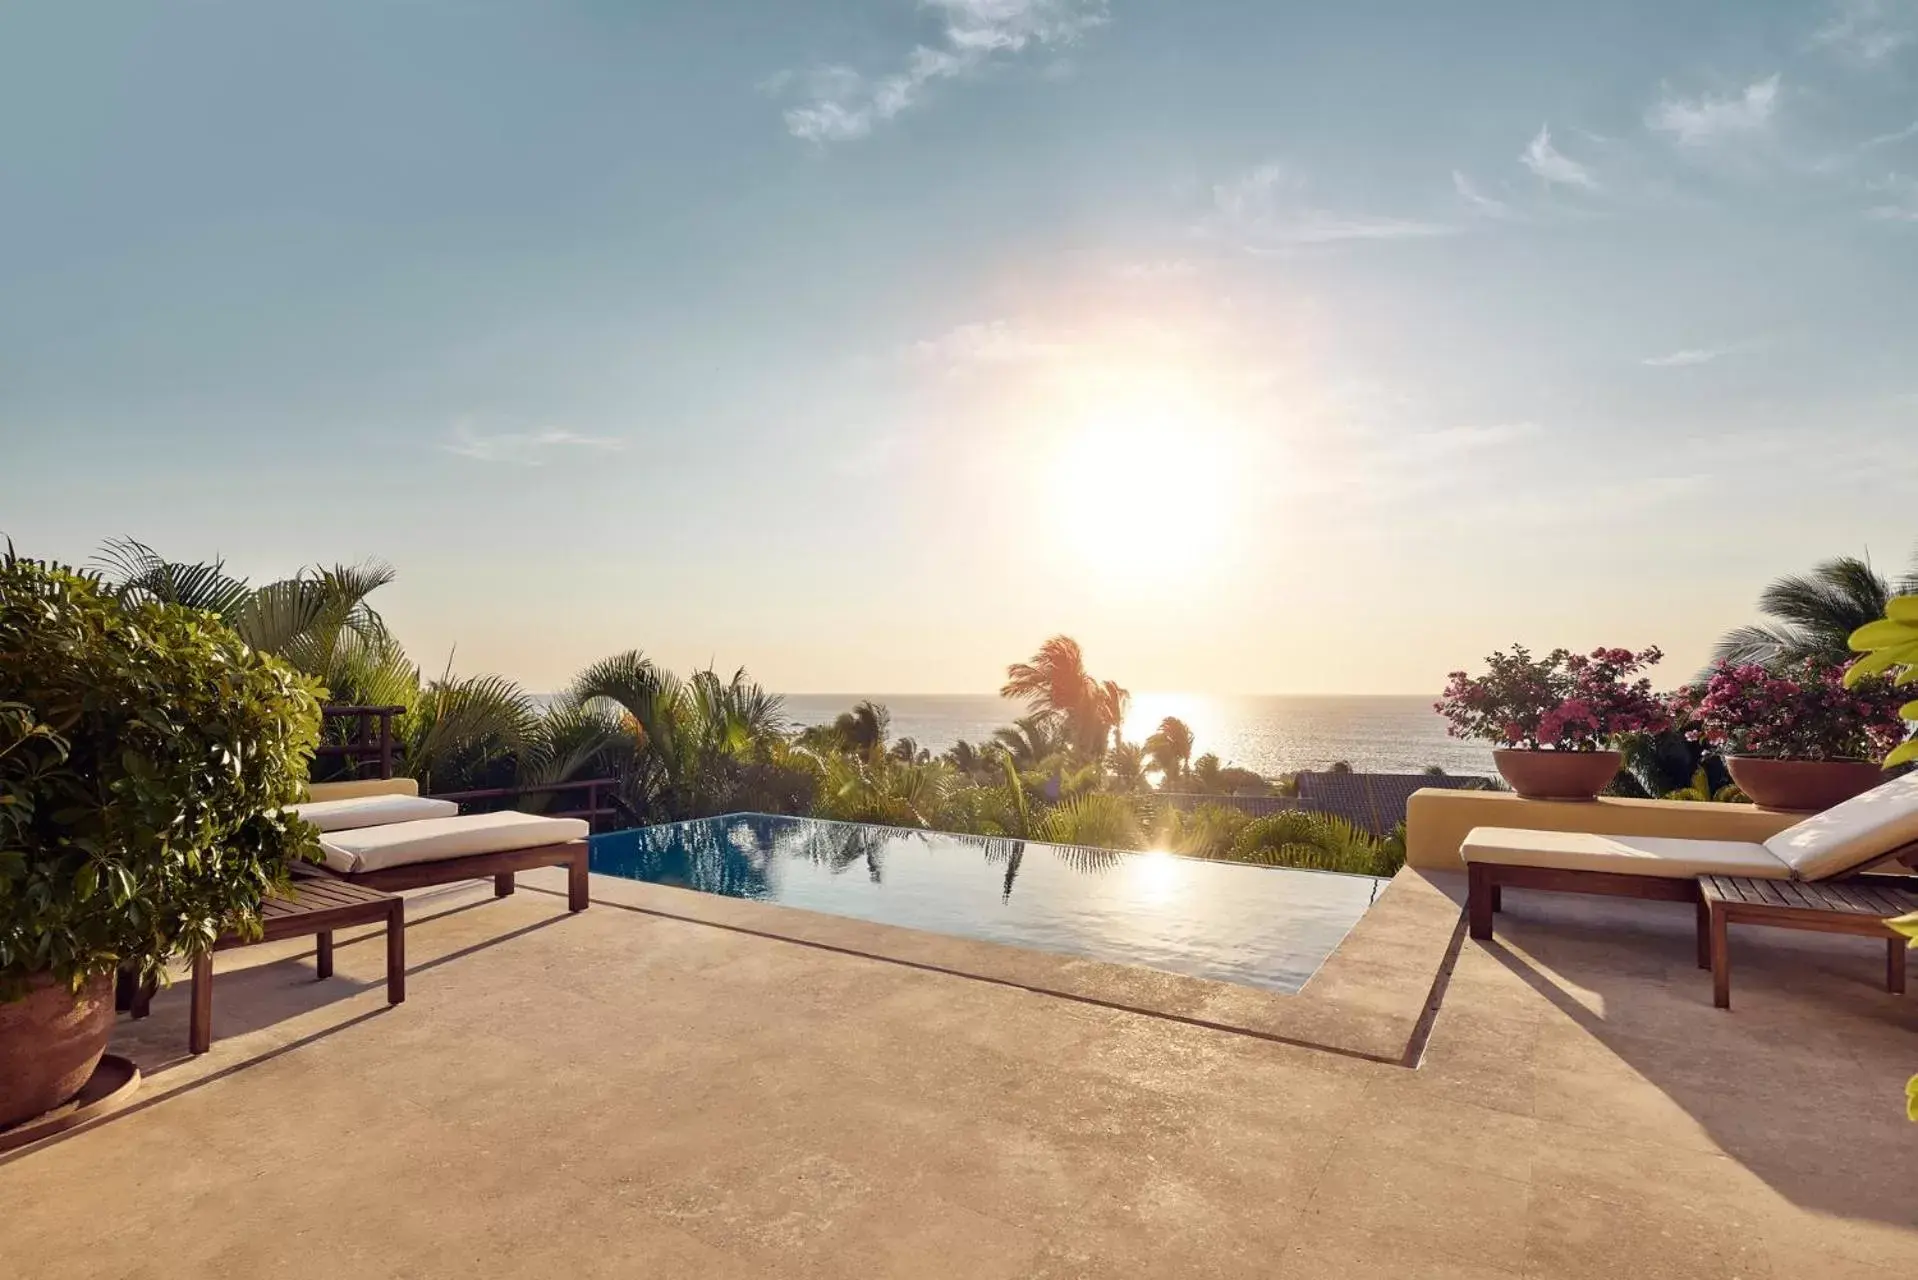 Balcony/Terrace, Swimming Pool in Four Seasons Resort Punta Mita